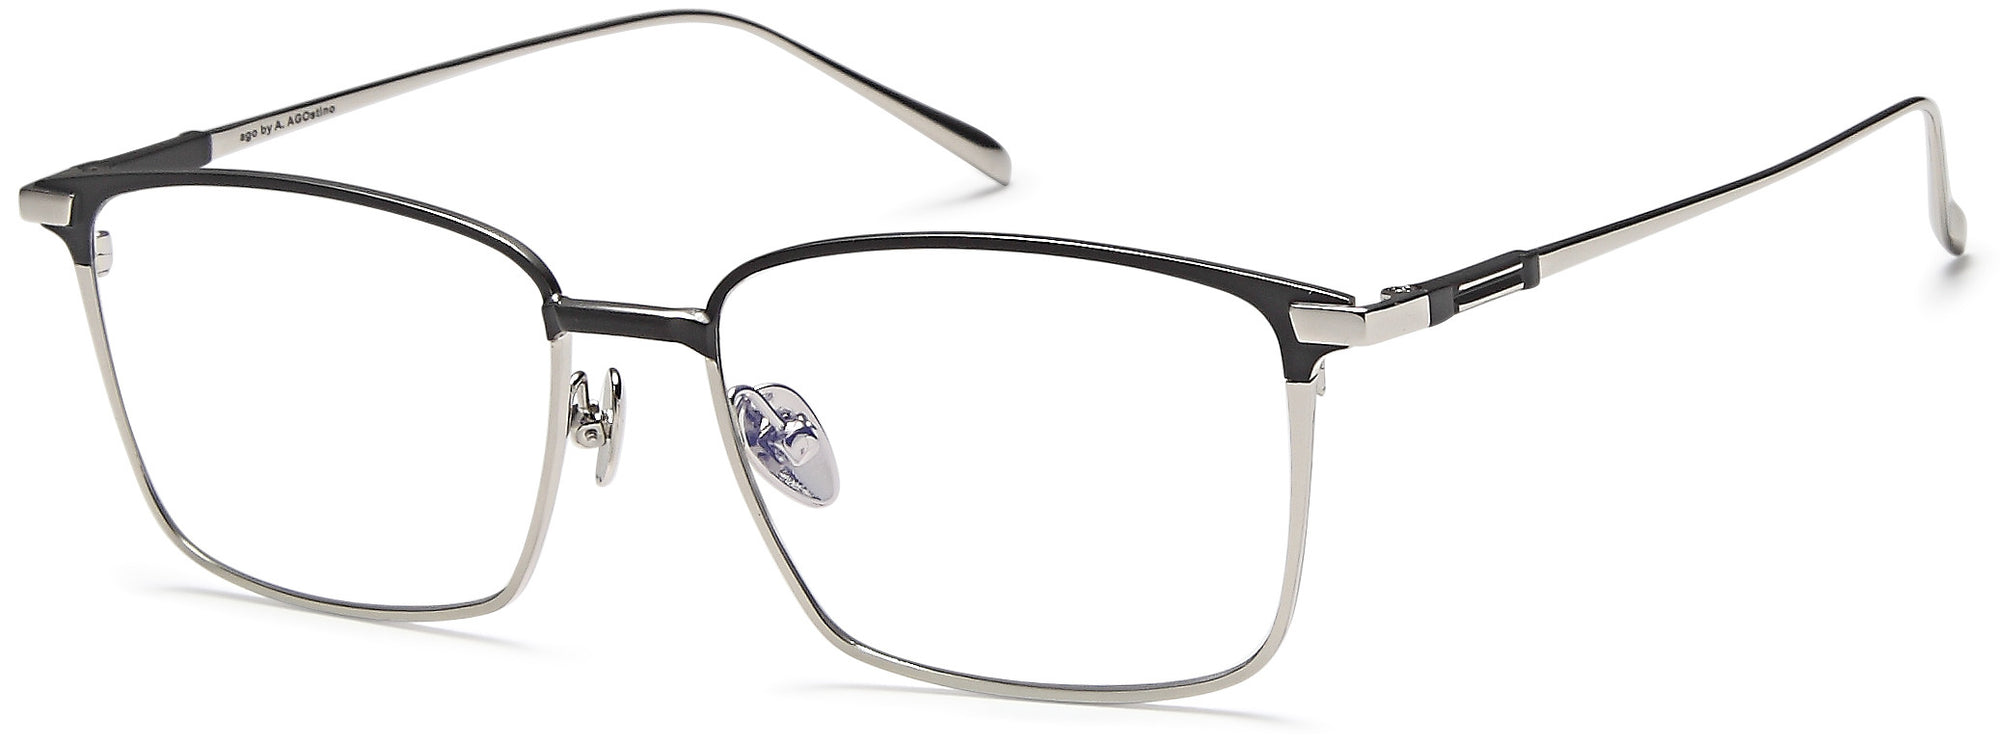 AGO Eyeglasses MF90002 - Go-Readers.com